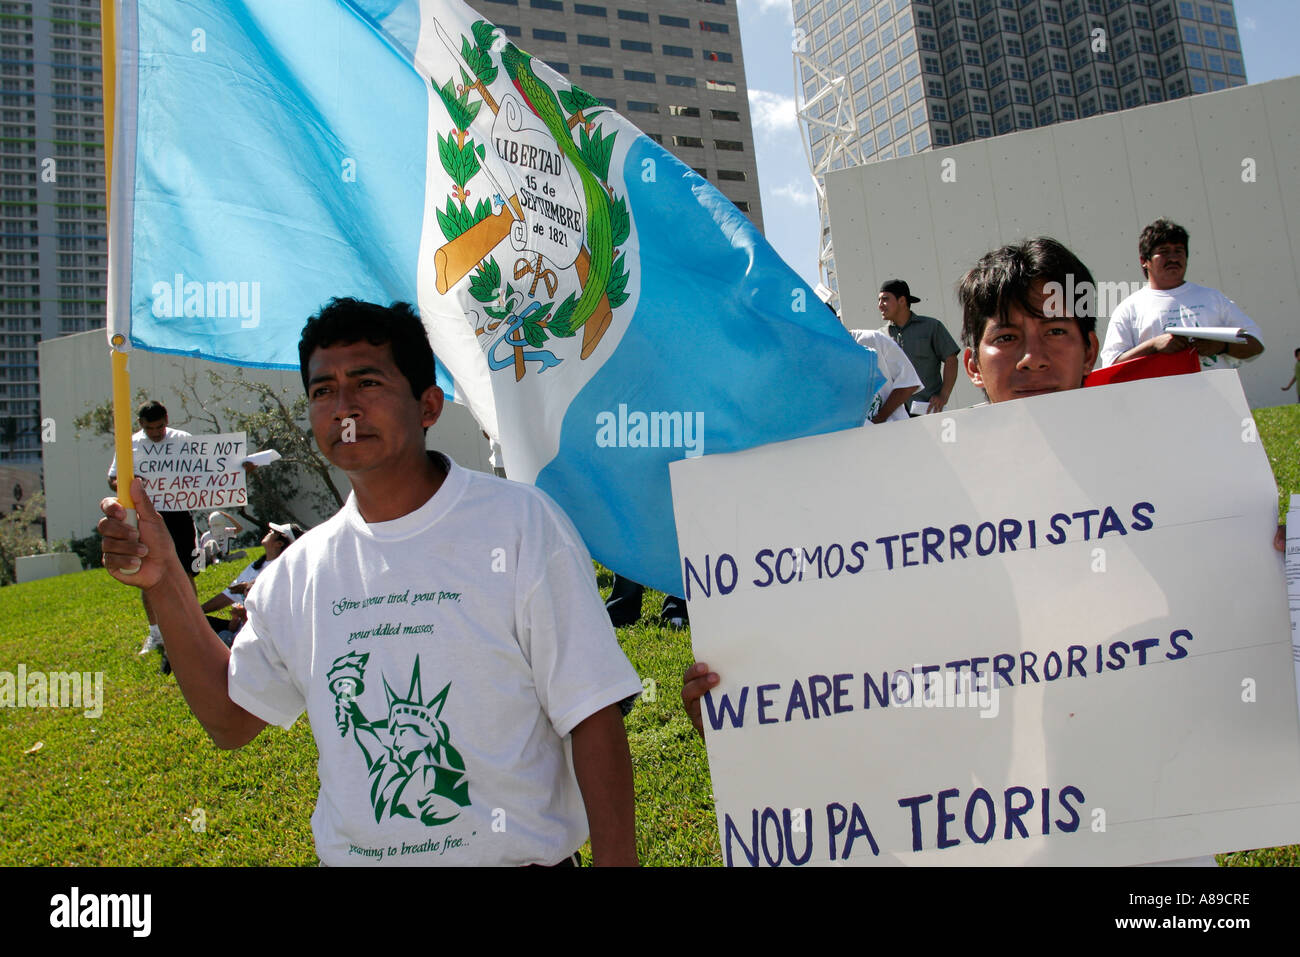 Miami Florida,Bayfront Park,immigré,s droits protestataires,hommes hispaniques,signe,nous ne sommes pas des terroristes,FL060228203 Banque D'Images